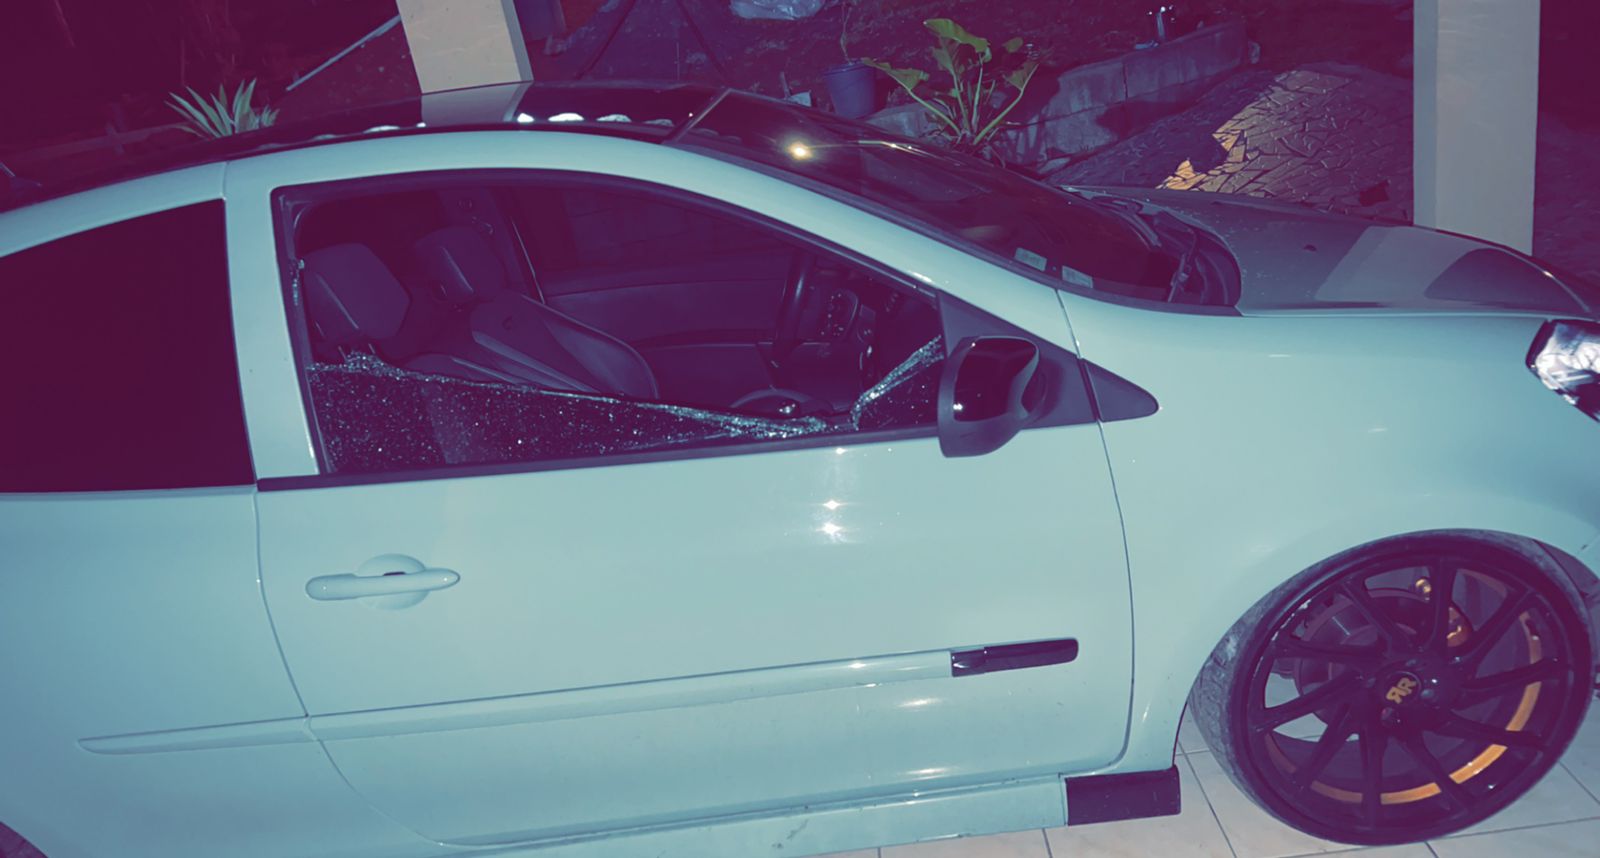     [PHOTOS & VIDEOS] Des véhicules vandalisés à la Baccha

